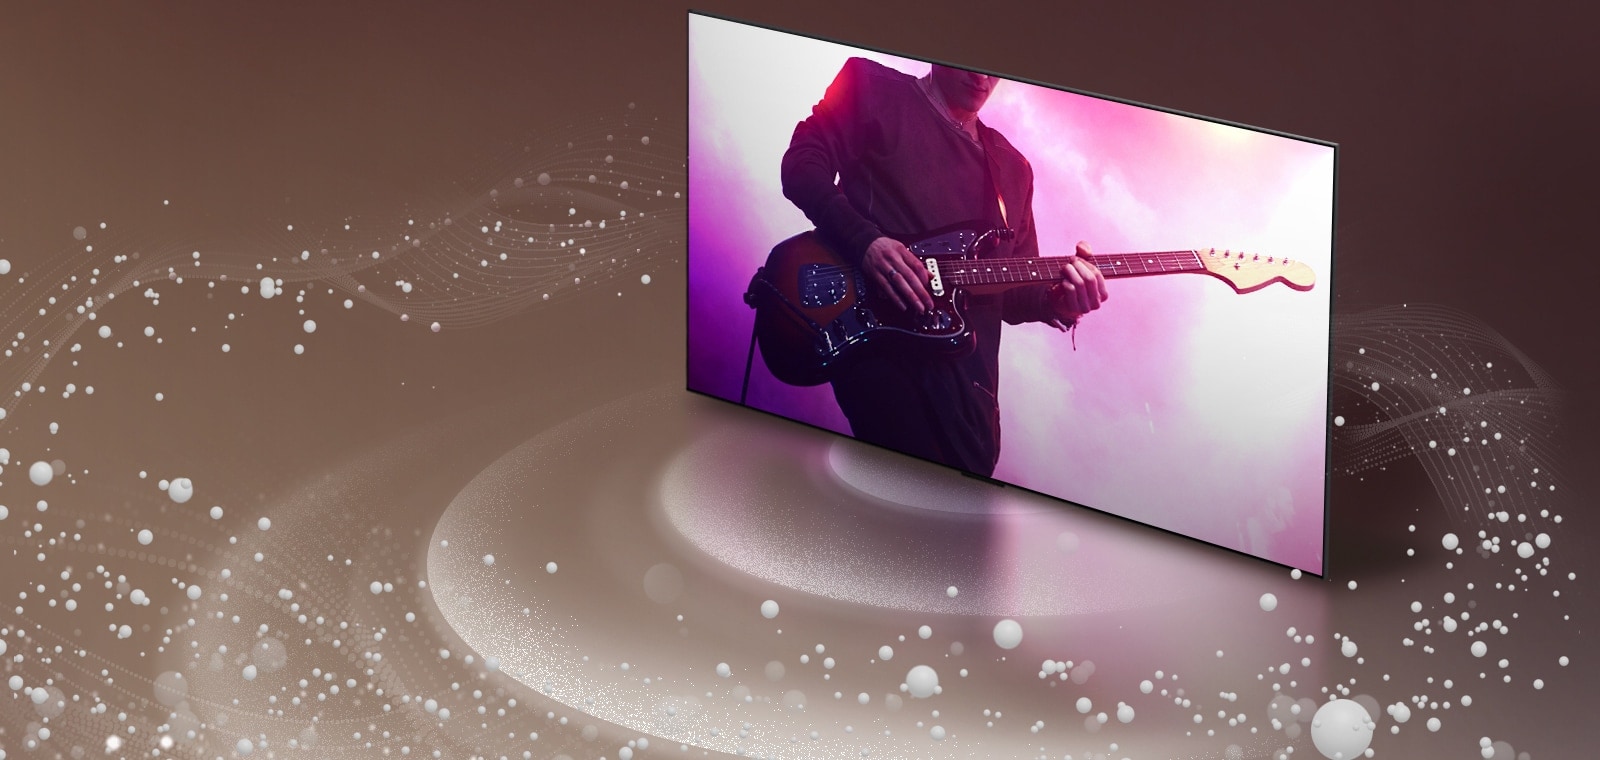 Телевизор LG OLED TV, от экрана которого исходят звуковые пузыри и волны, заполняющие пространство.